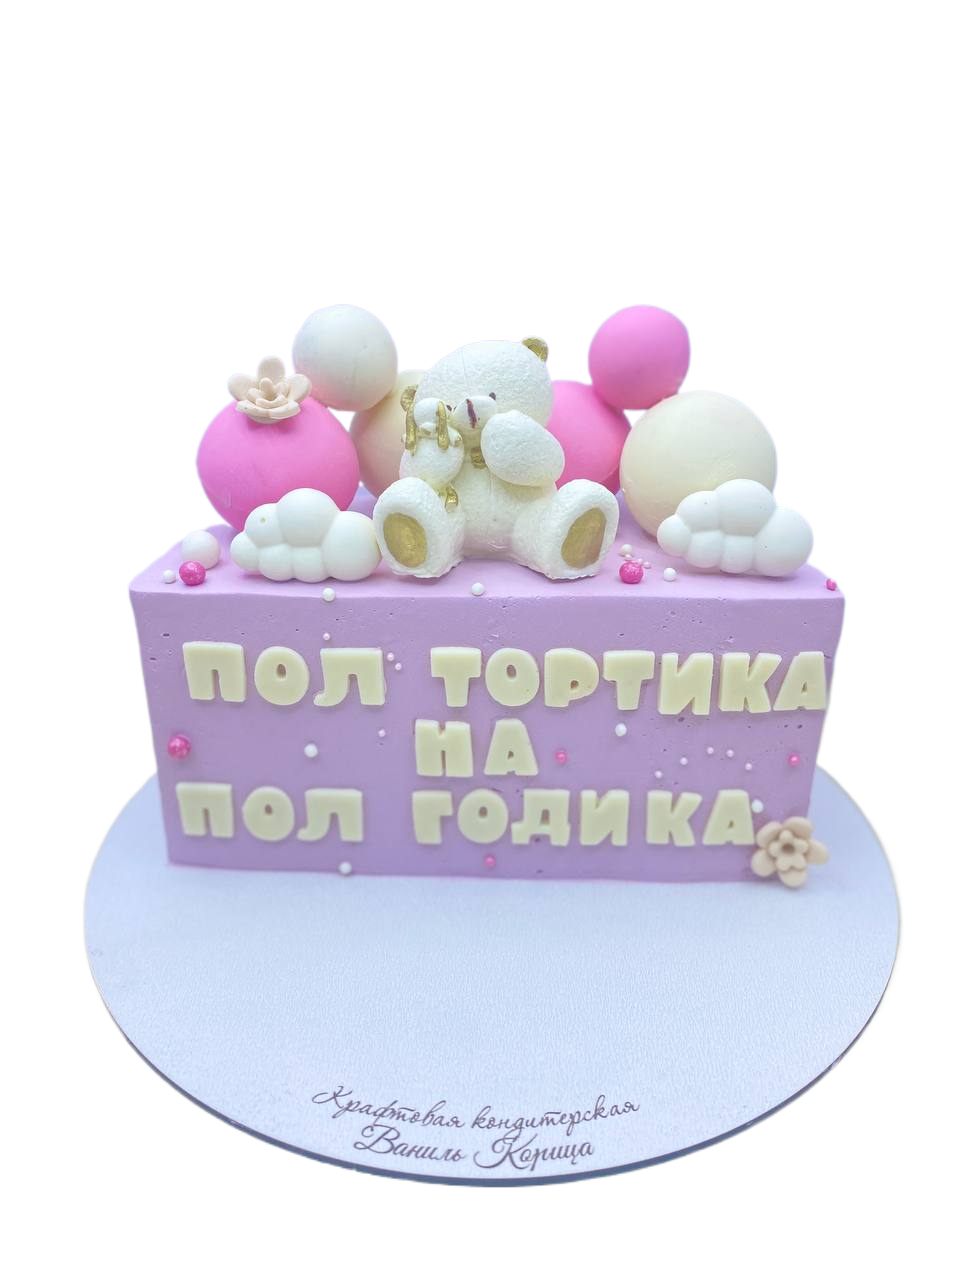 Детский торт Молочная девочка #20 в кондитерской cake64.ru фото